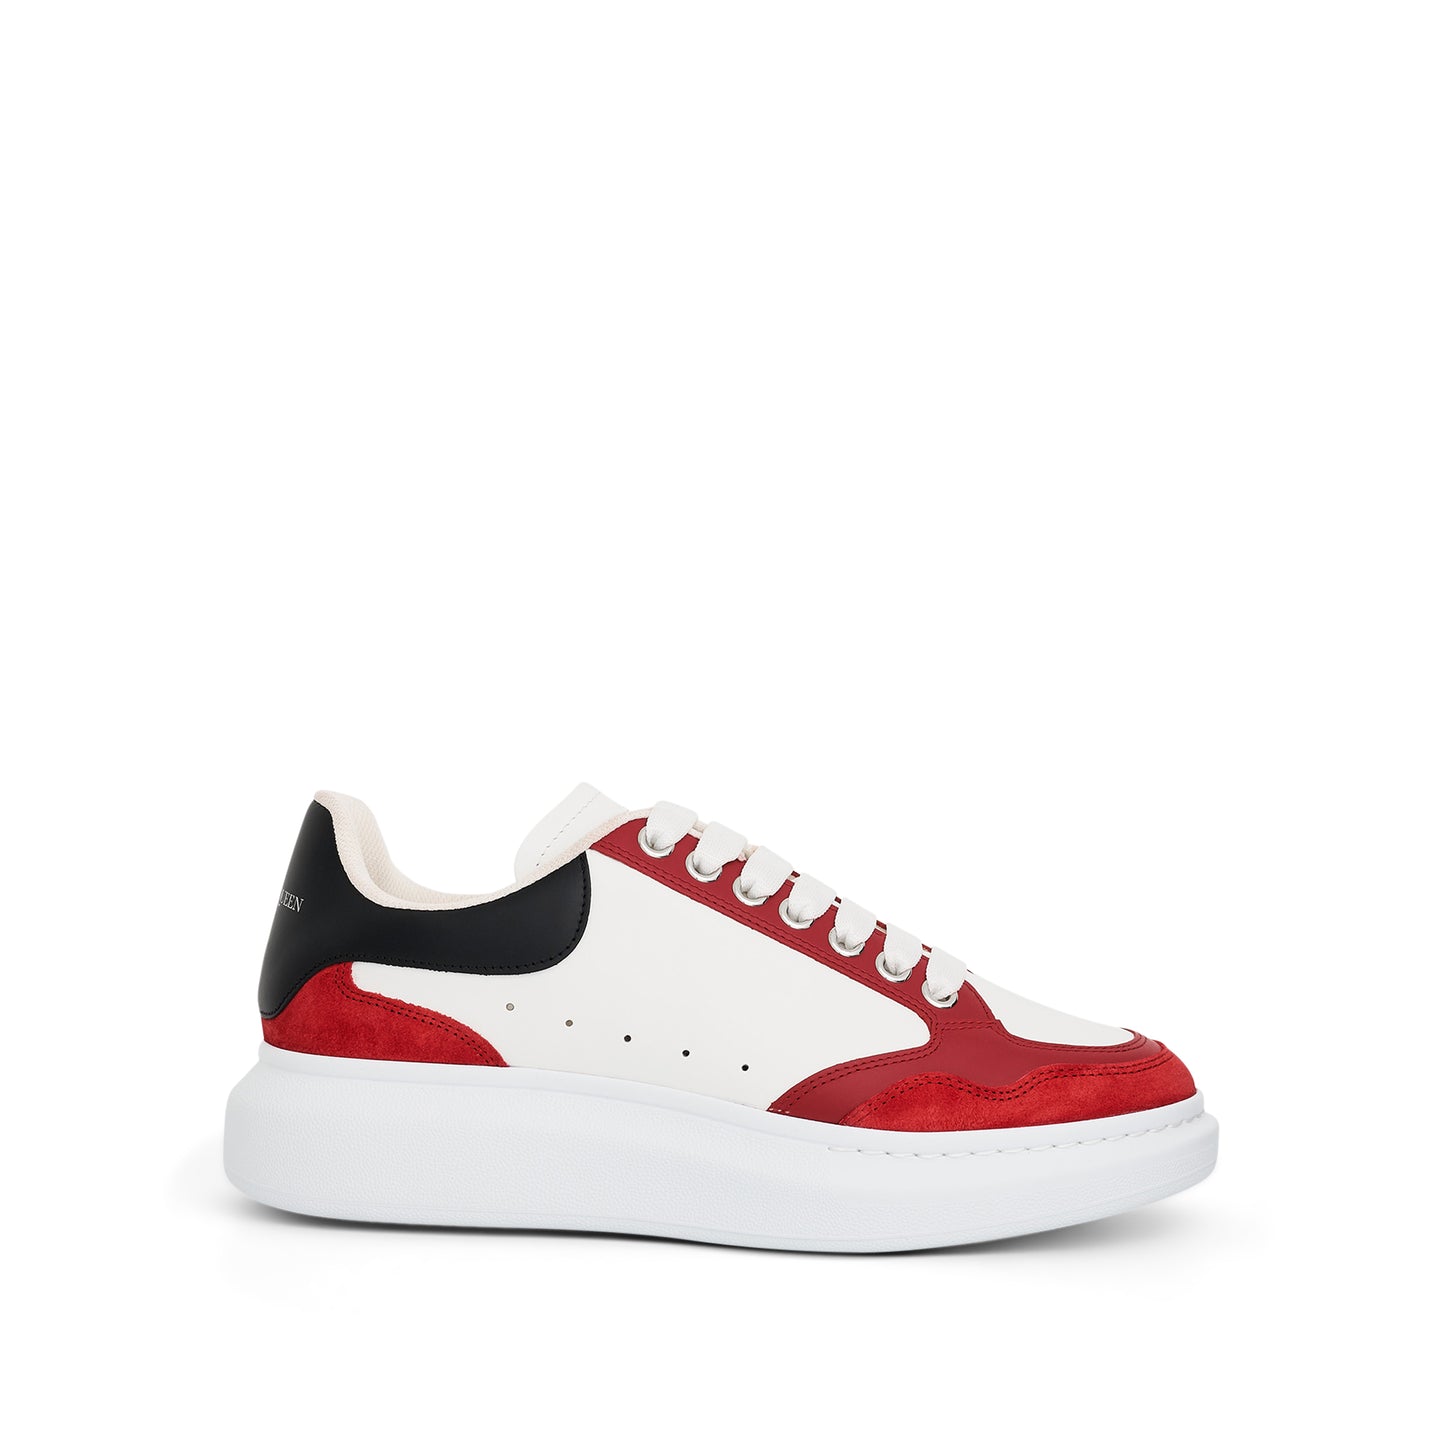 Larry Oversized Sensory Sneaker in White/Black/Welsh Red